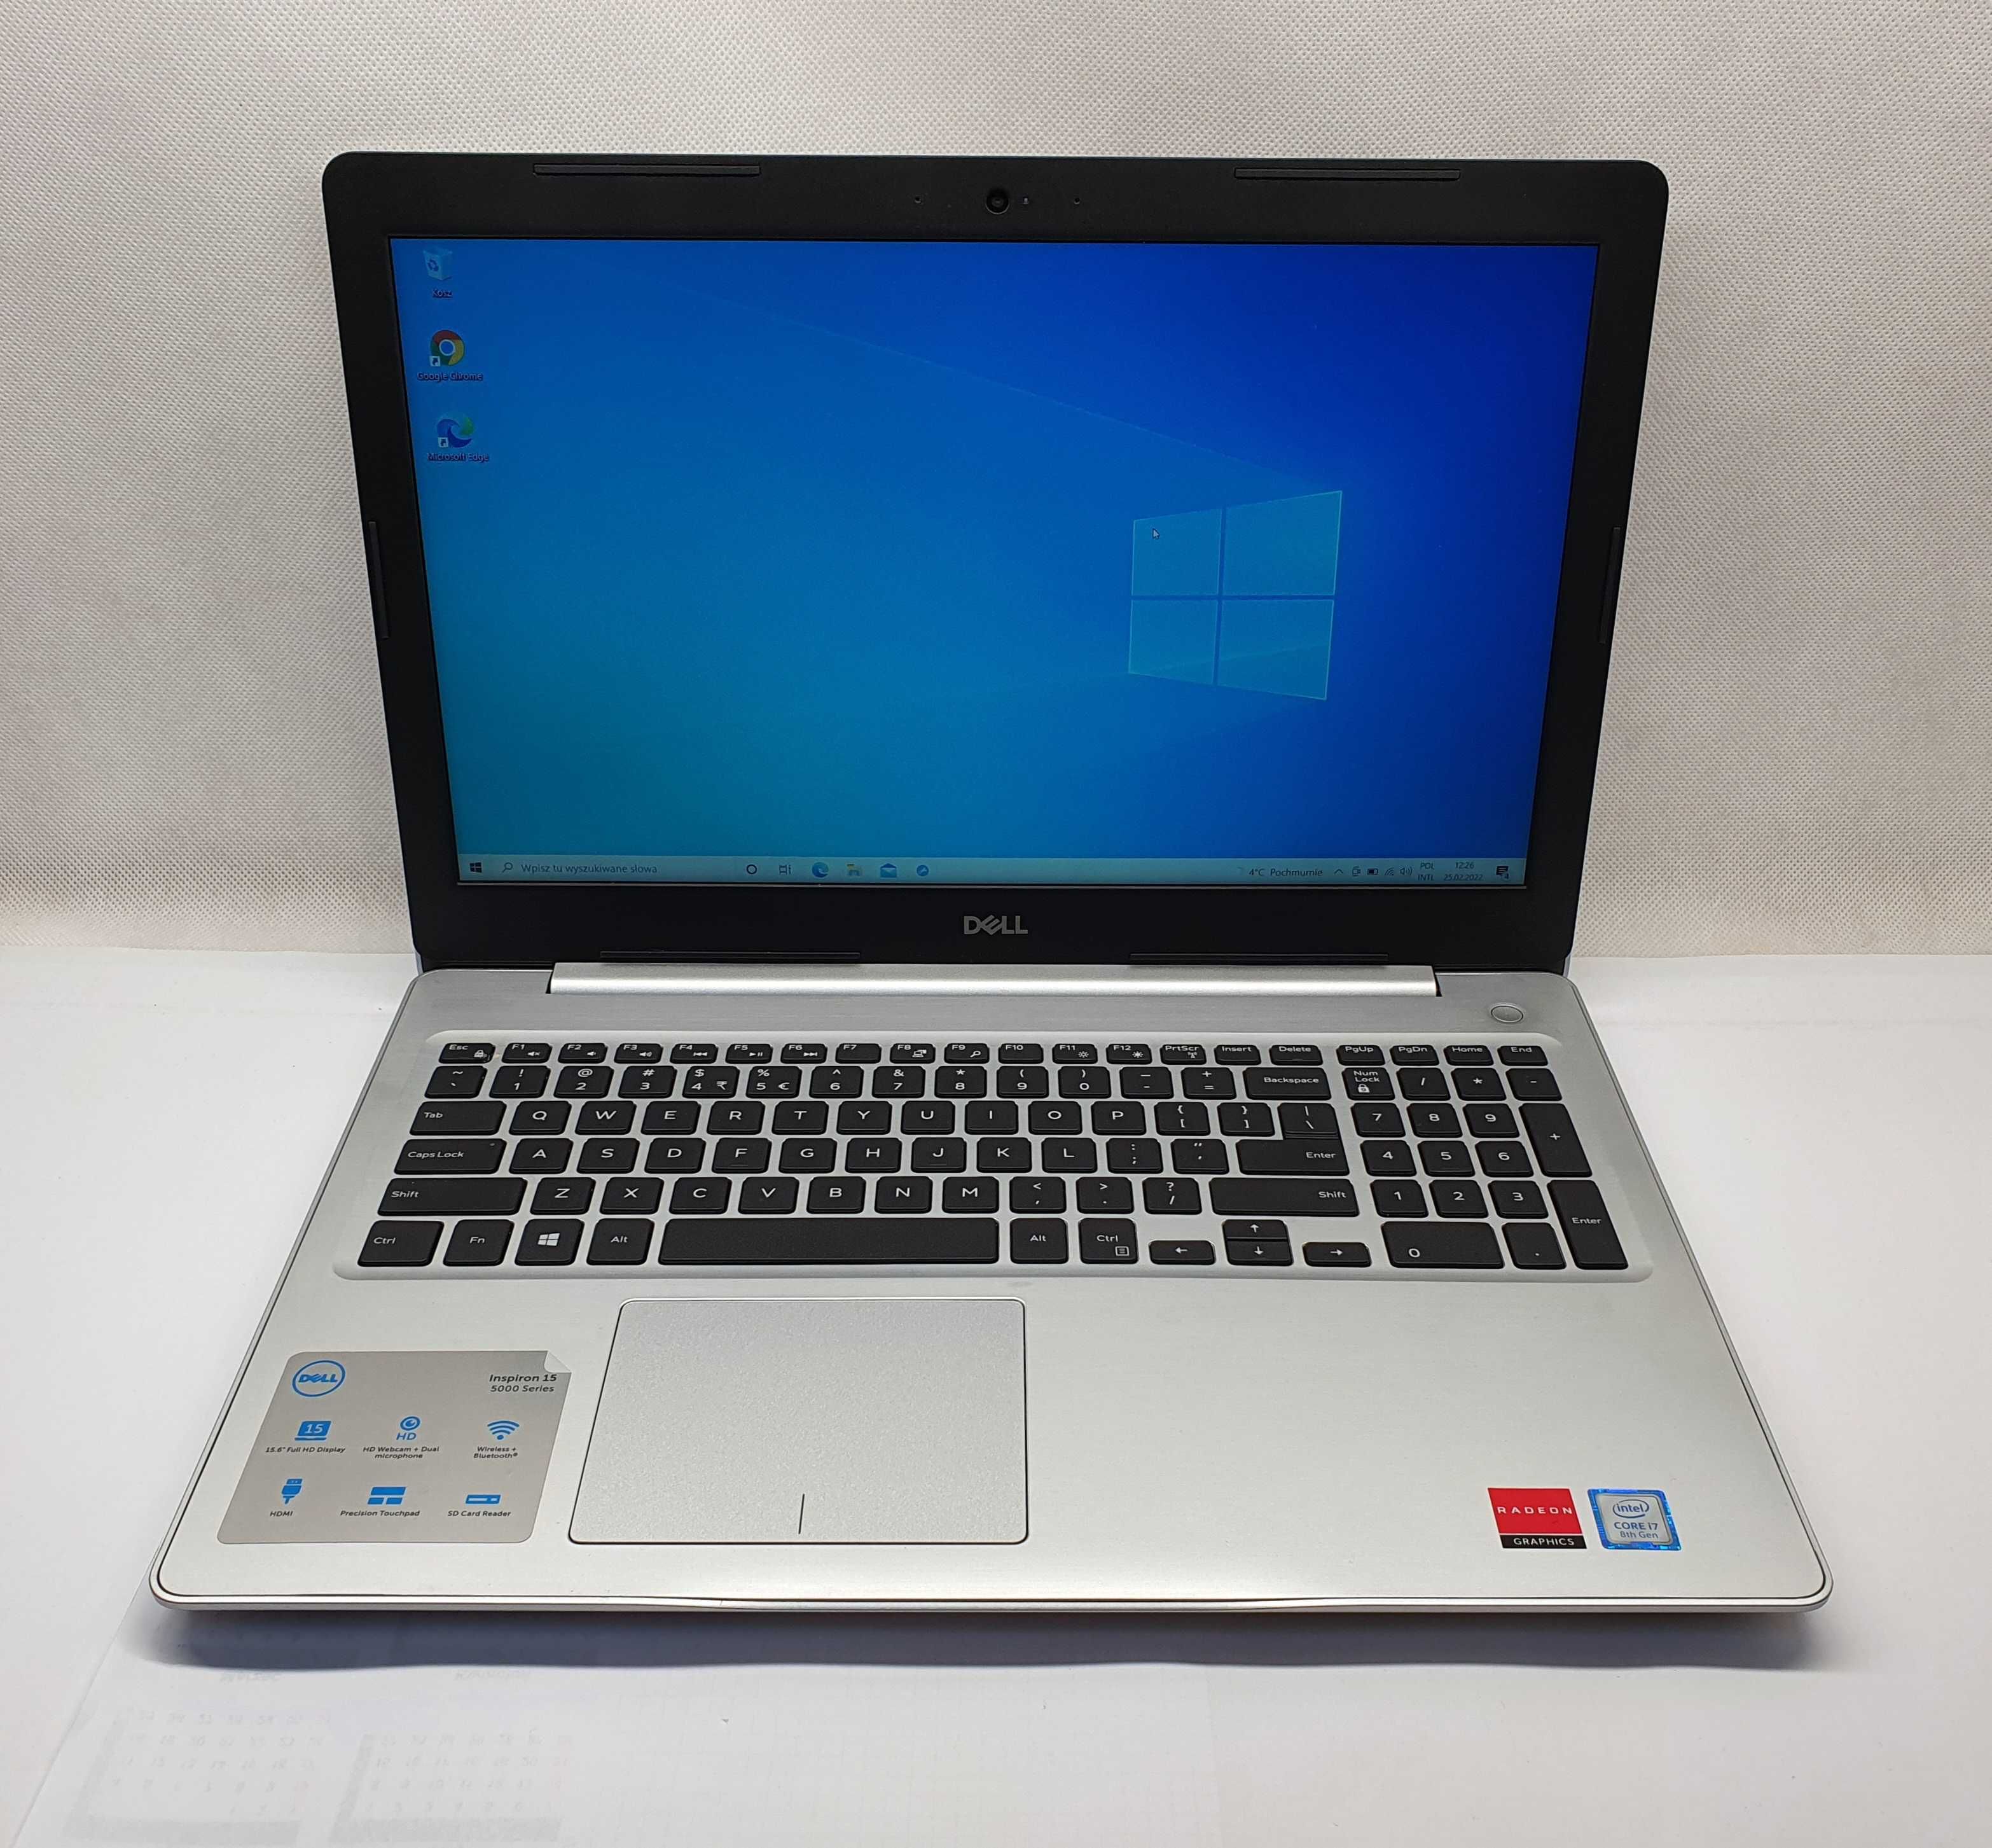 Laptop DELL INSPIRON 15, i7, RADEON, Lombard Jasło Czackiego